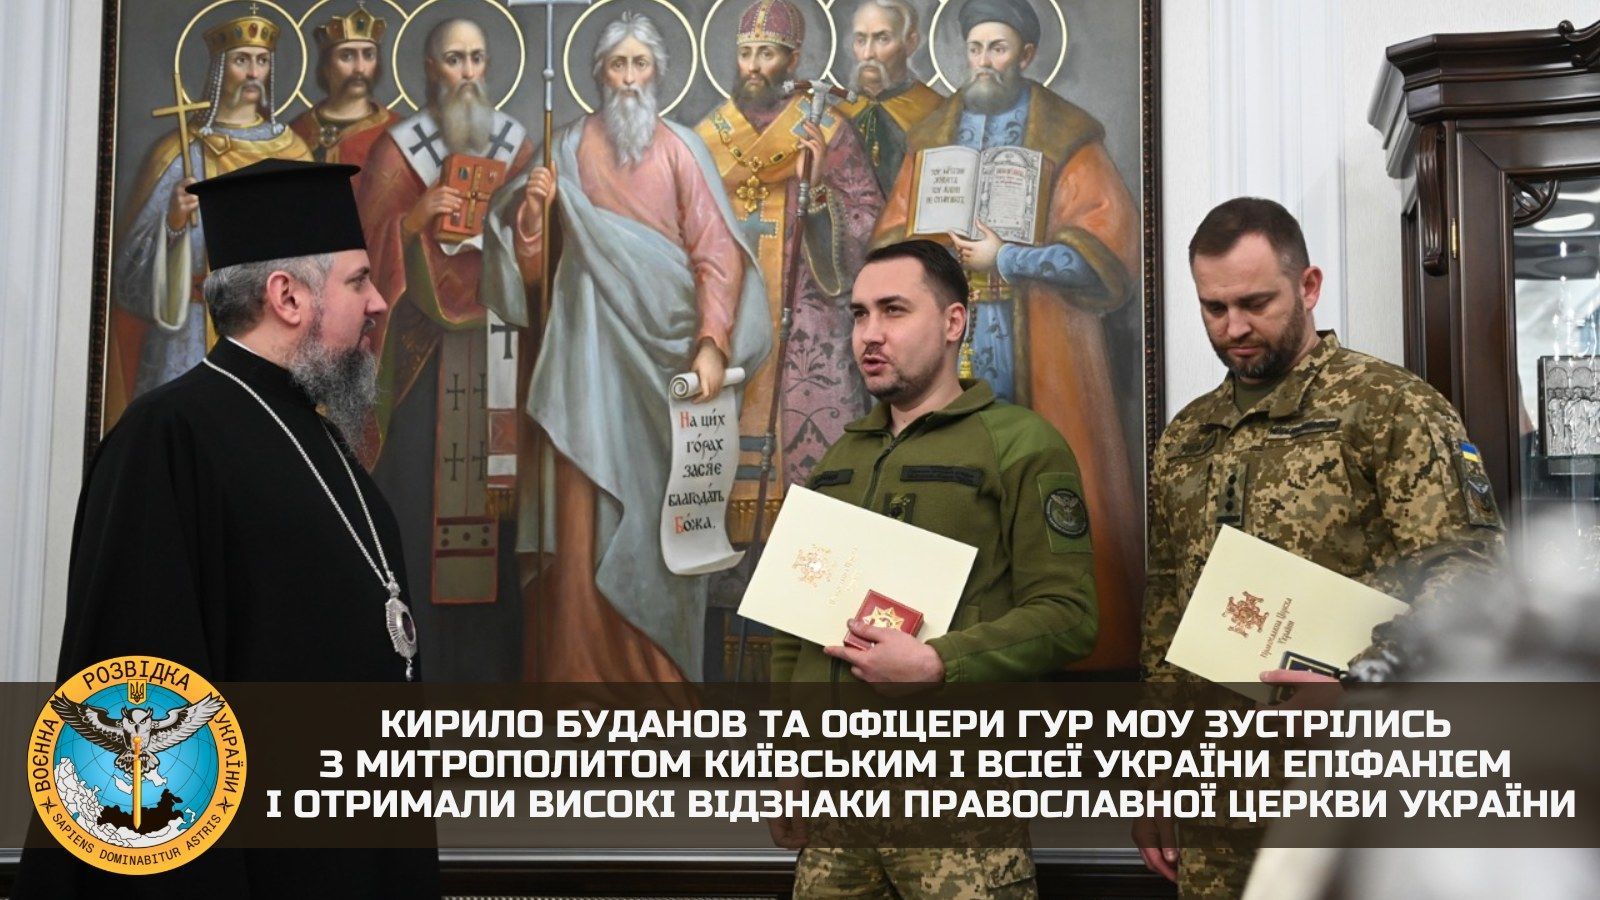 Митрополит нагородив Буданова орденом святого великомученика Юрія Переможця, а три офіцери ГУР МО, які були на зустрічі, отримали ордени архистратига Михаїла.